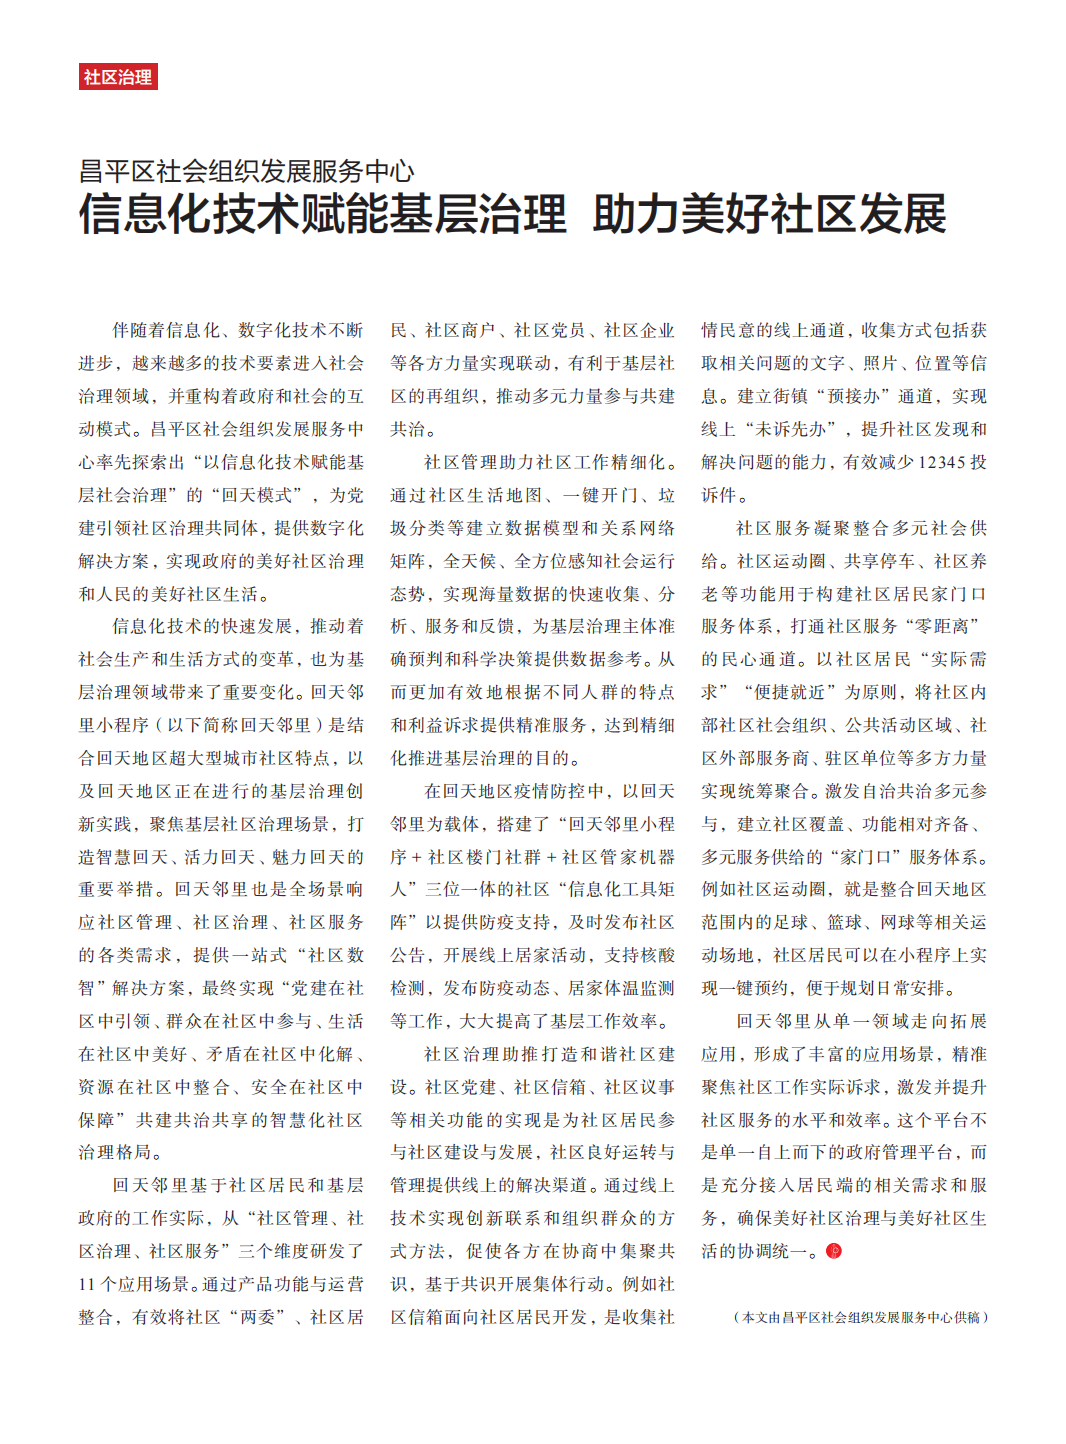 《北京社会组织》杂志2022年第4期_46.png